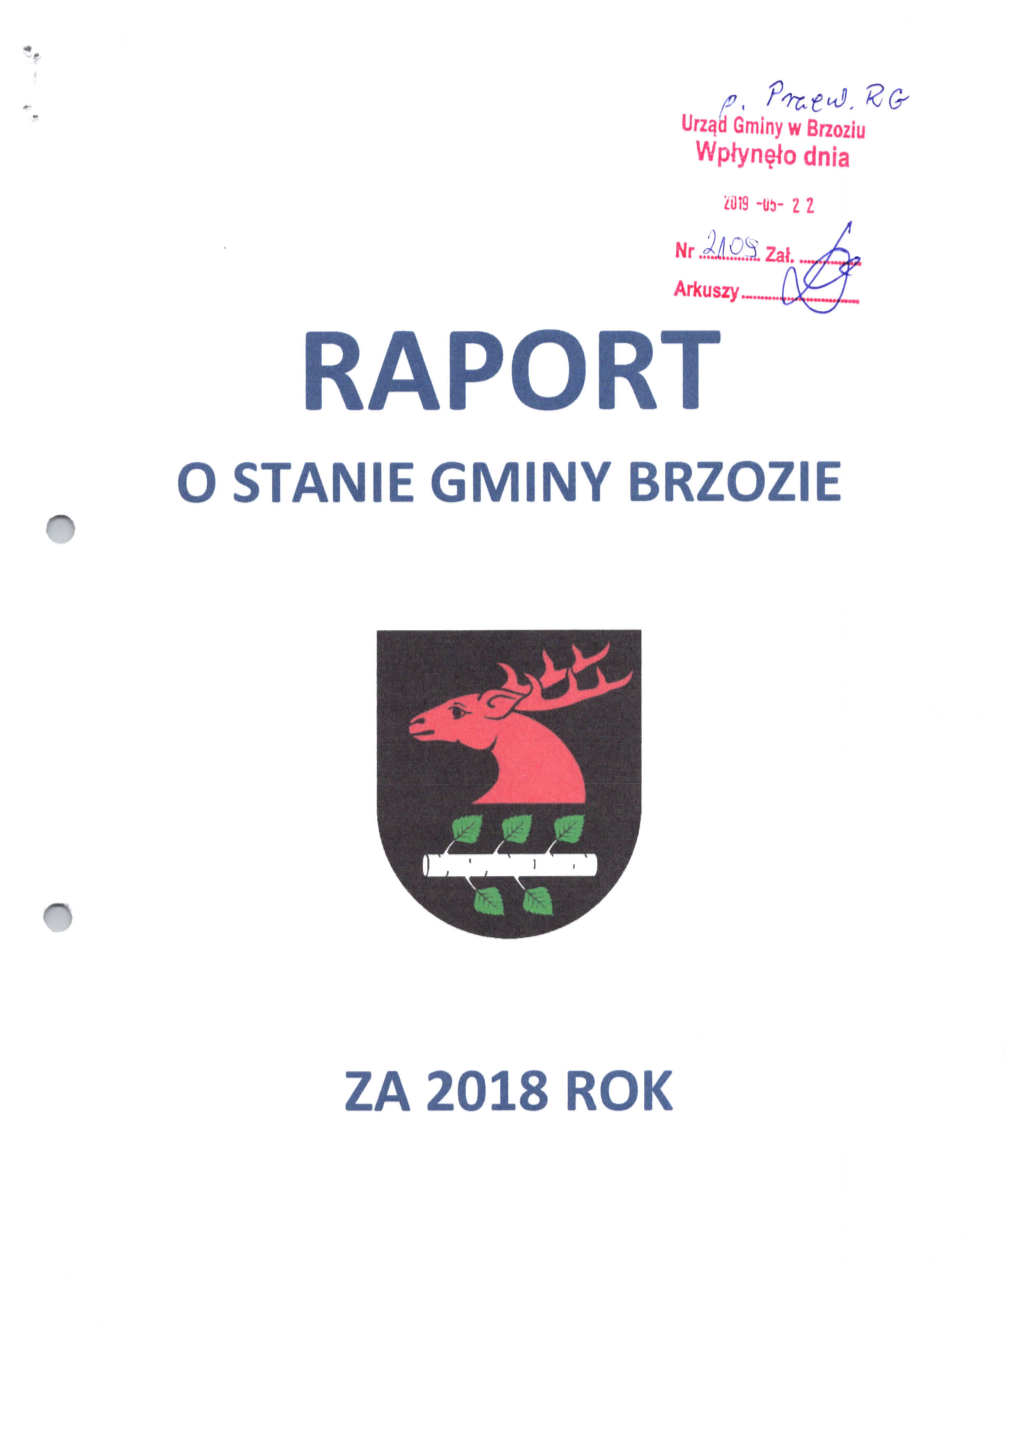 Raport 0 Stanie Gminy Brzozie ®